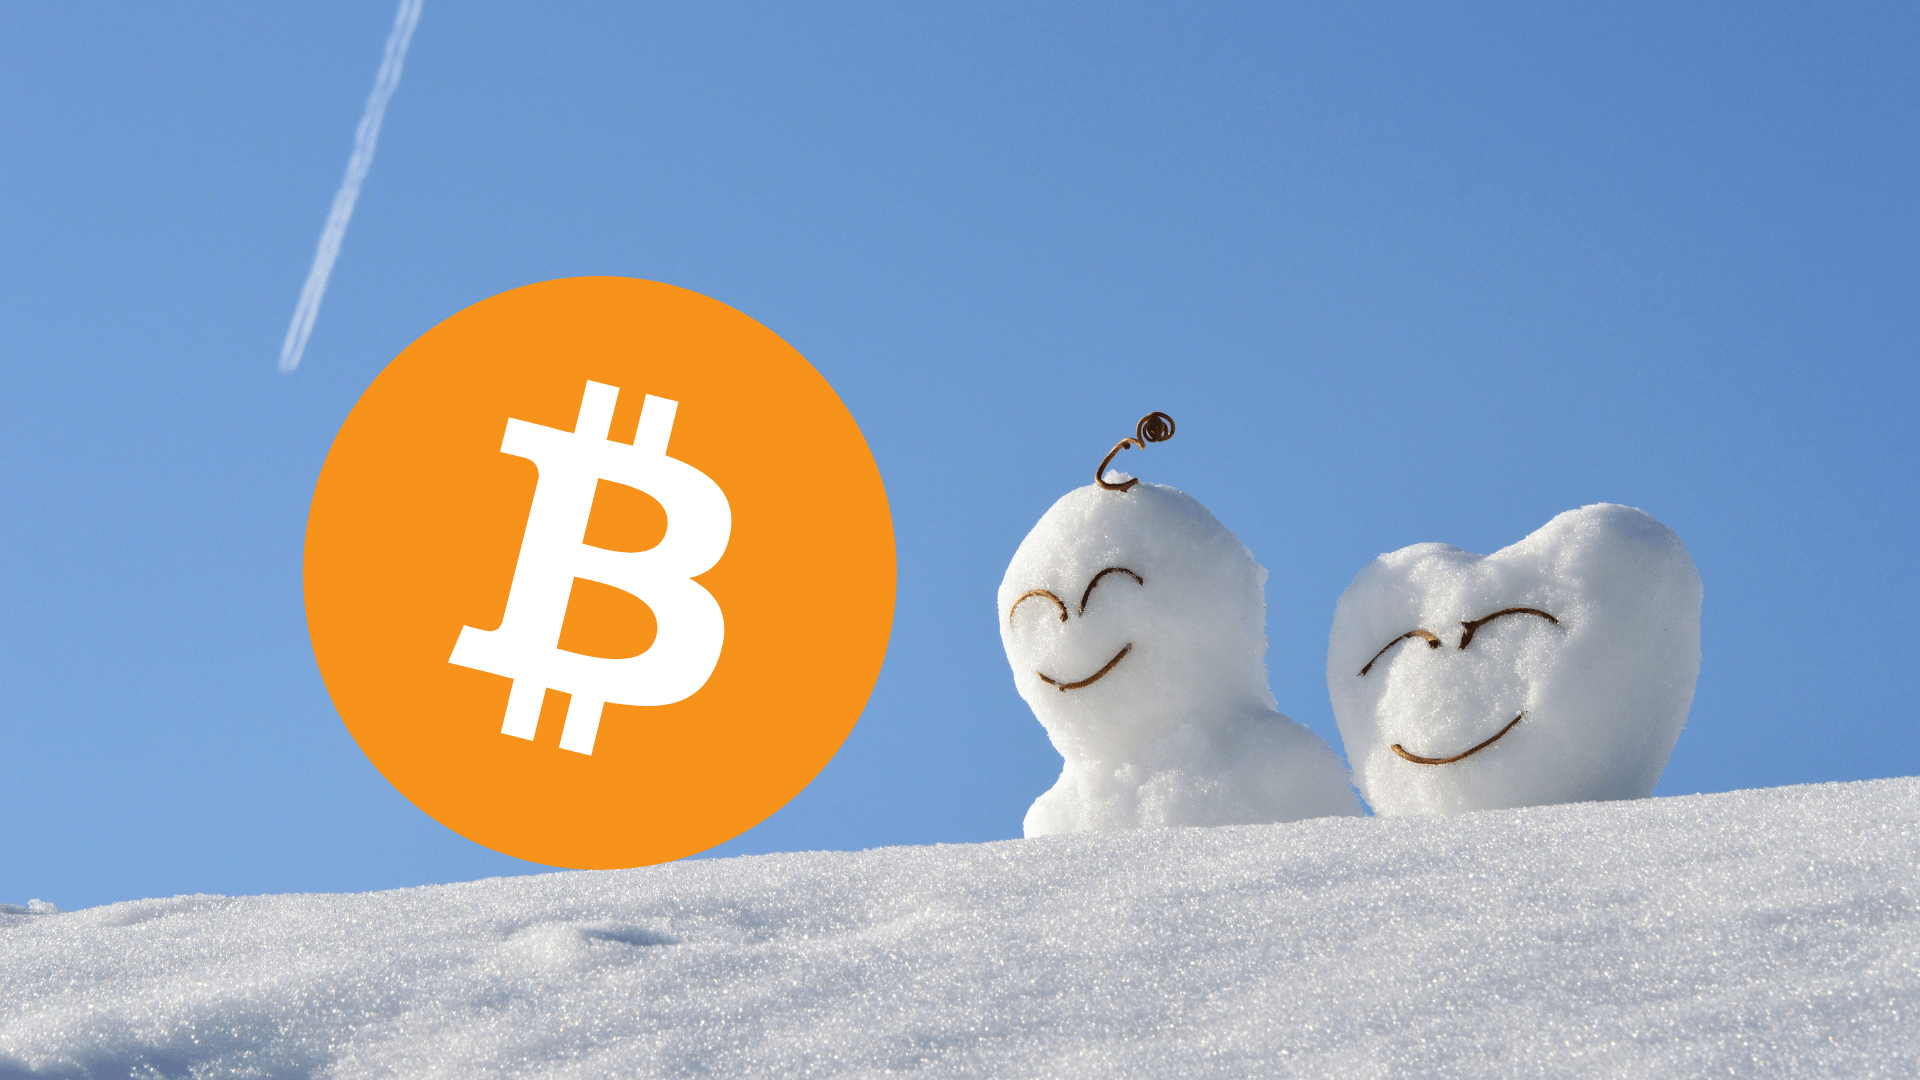  Bitcoin žiema baigiasi ir kitas bull run tęsis iki 2025 m.